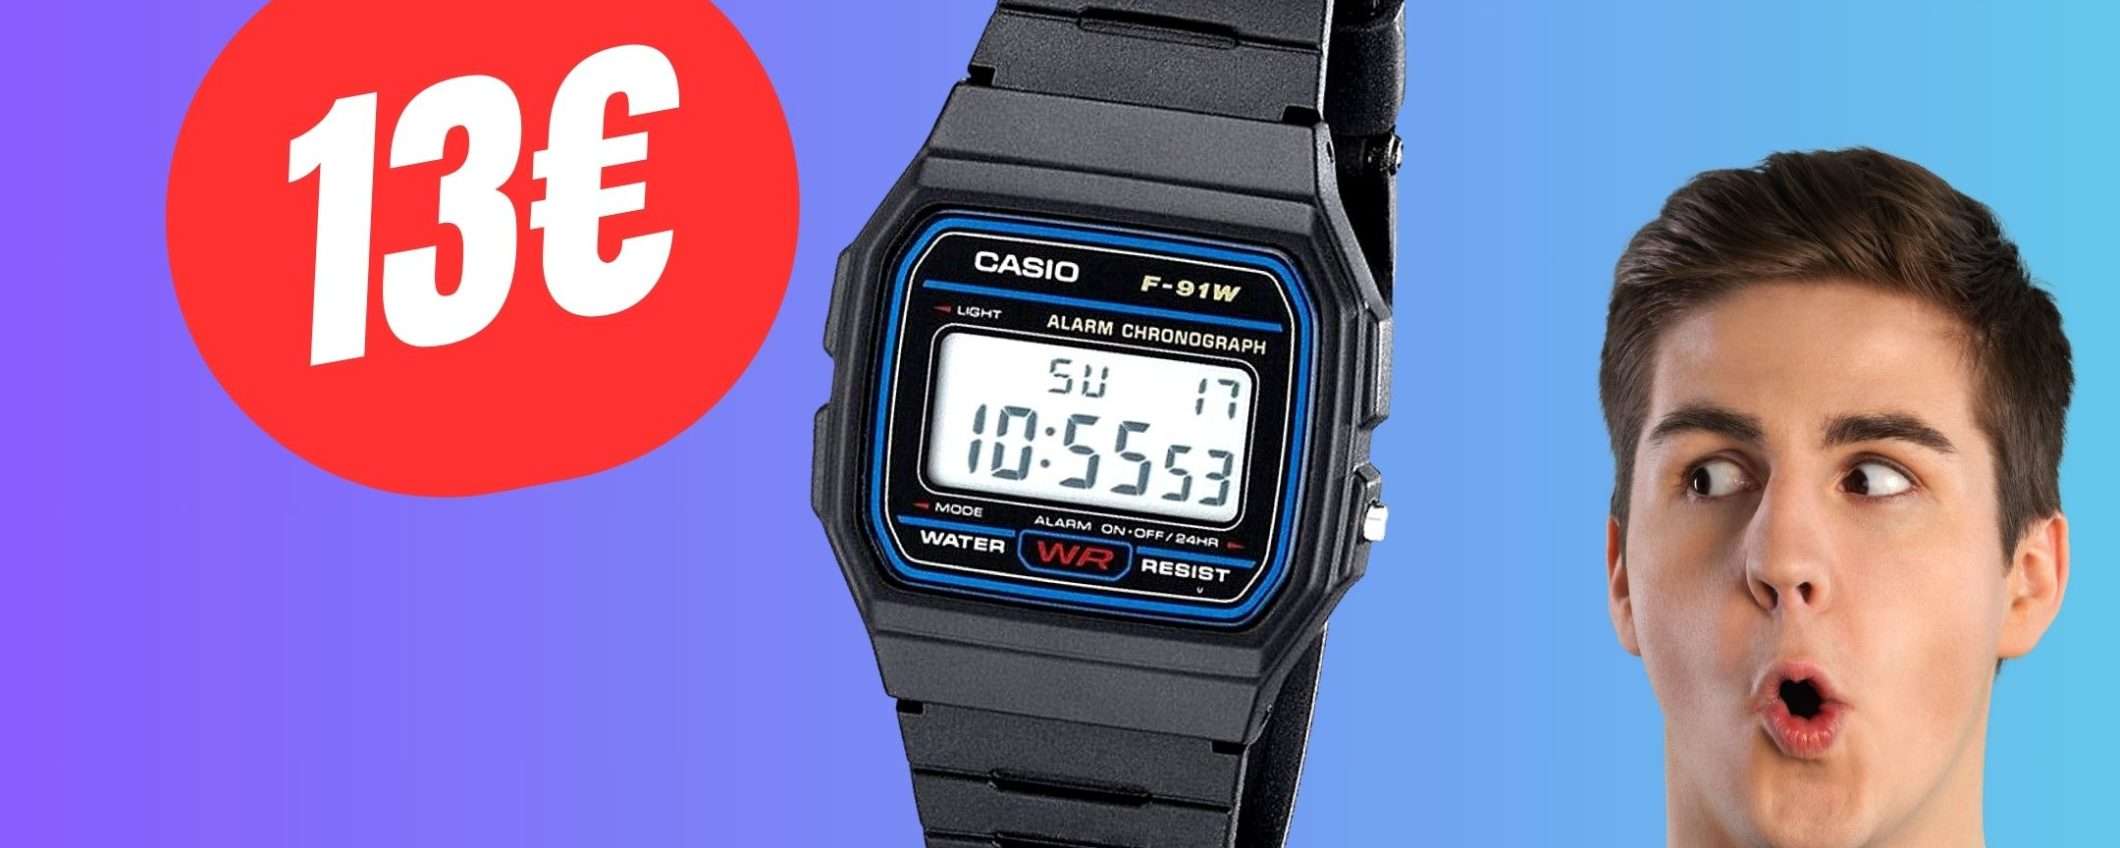 L'iconico orologio Casio CROLLA a soli 13€ su eBay!